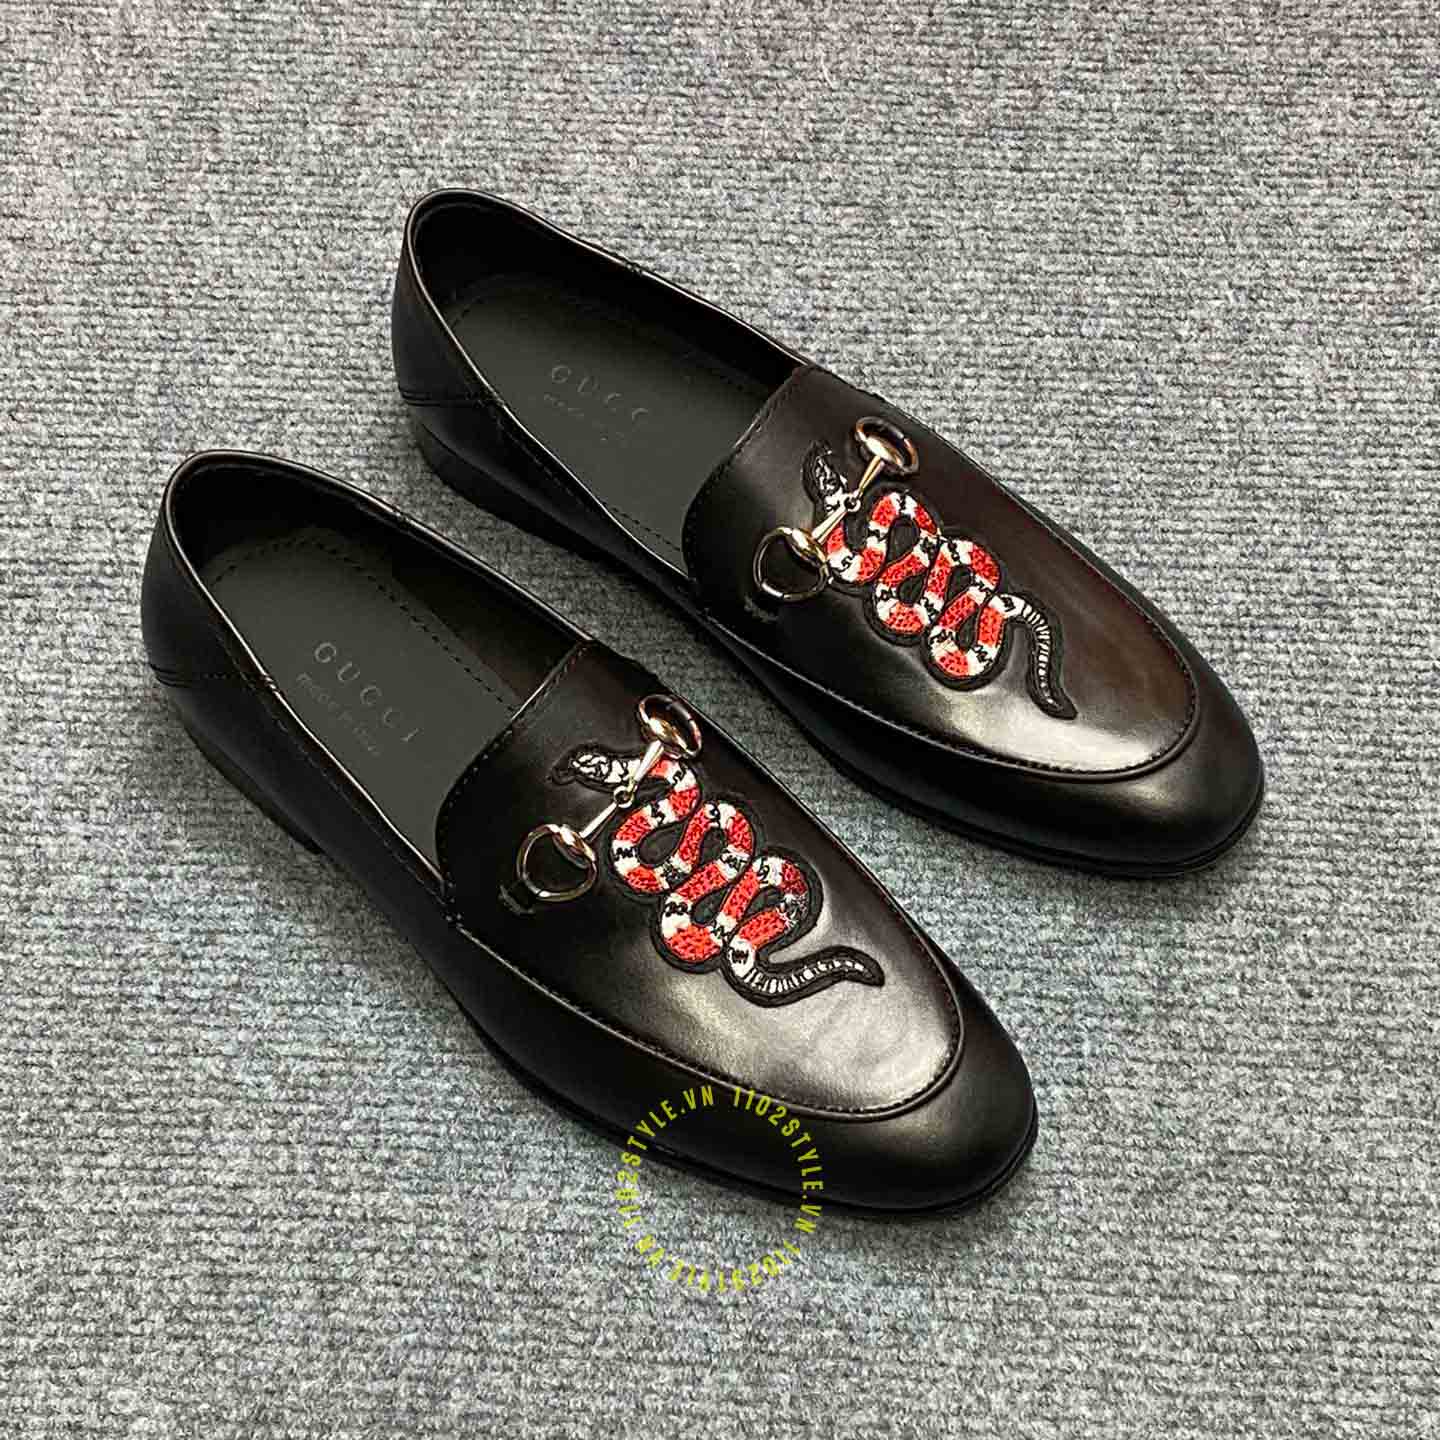 Giới thiệu về mẫu giày lười Gucci rắn like auth màu đen logo kim loại sang trọng